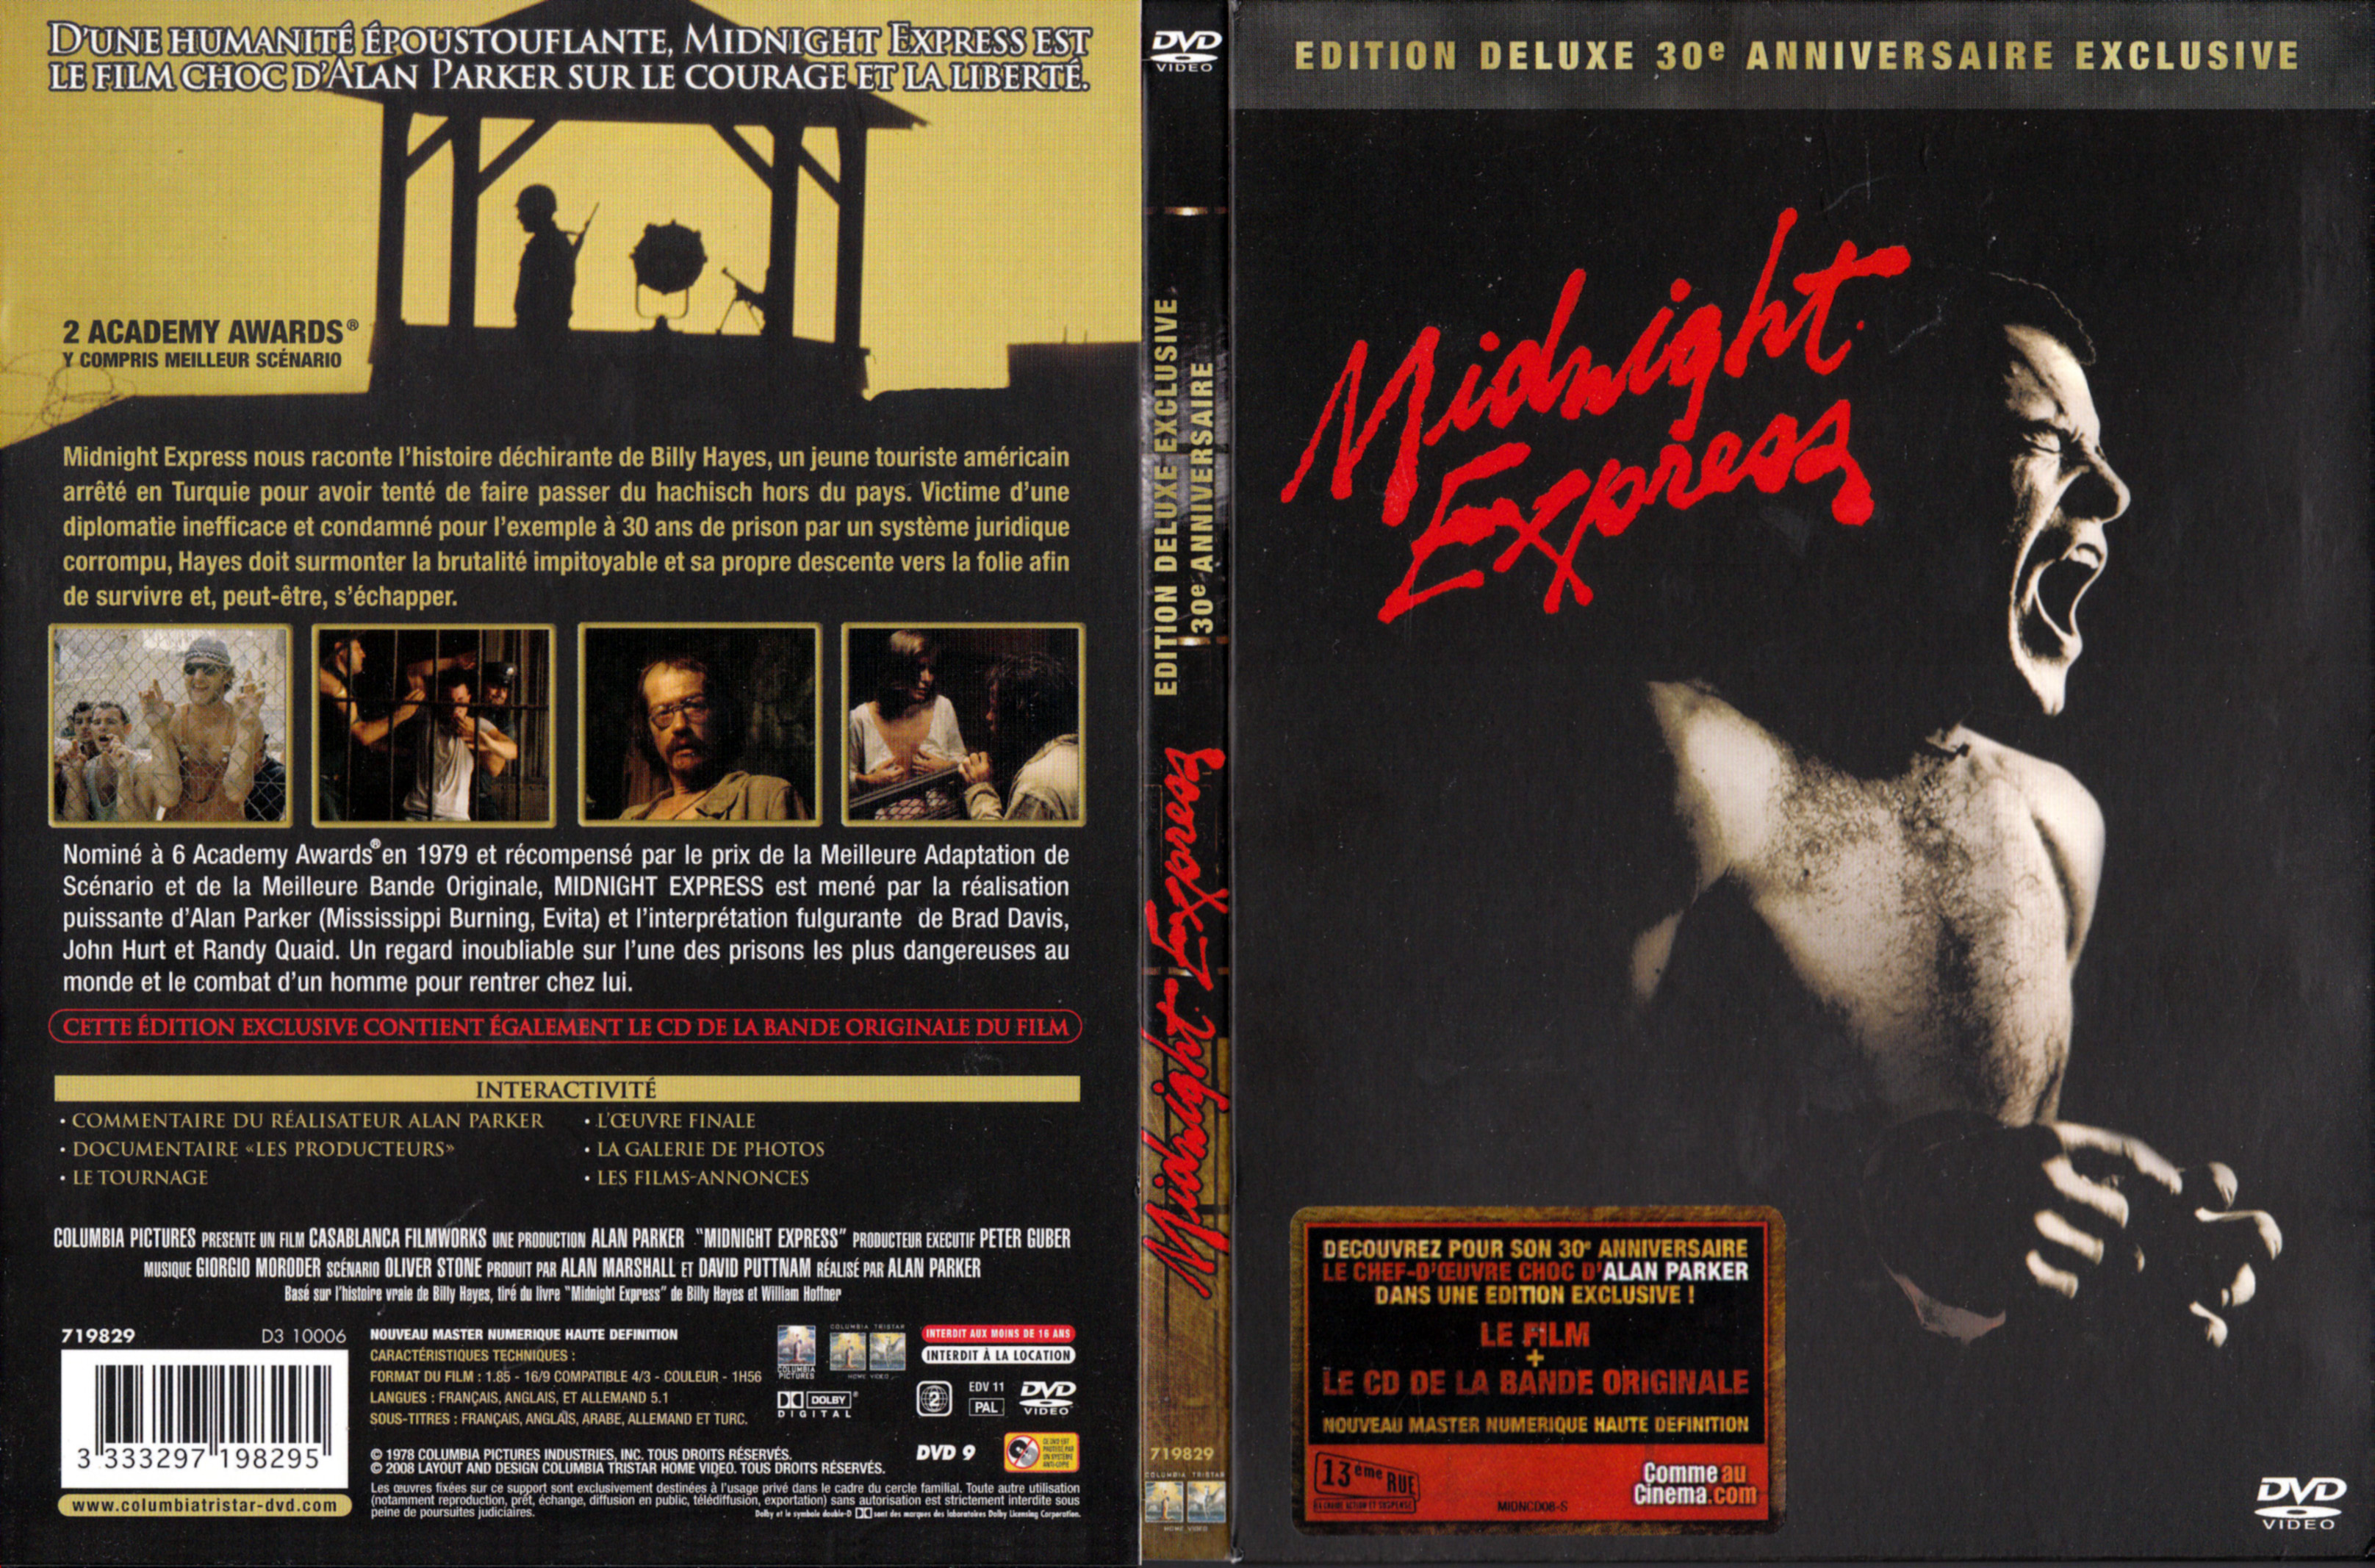 Jaquette DVD Midnight express v5